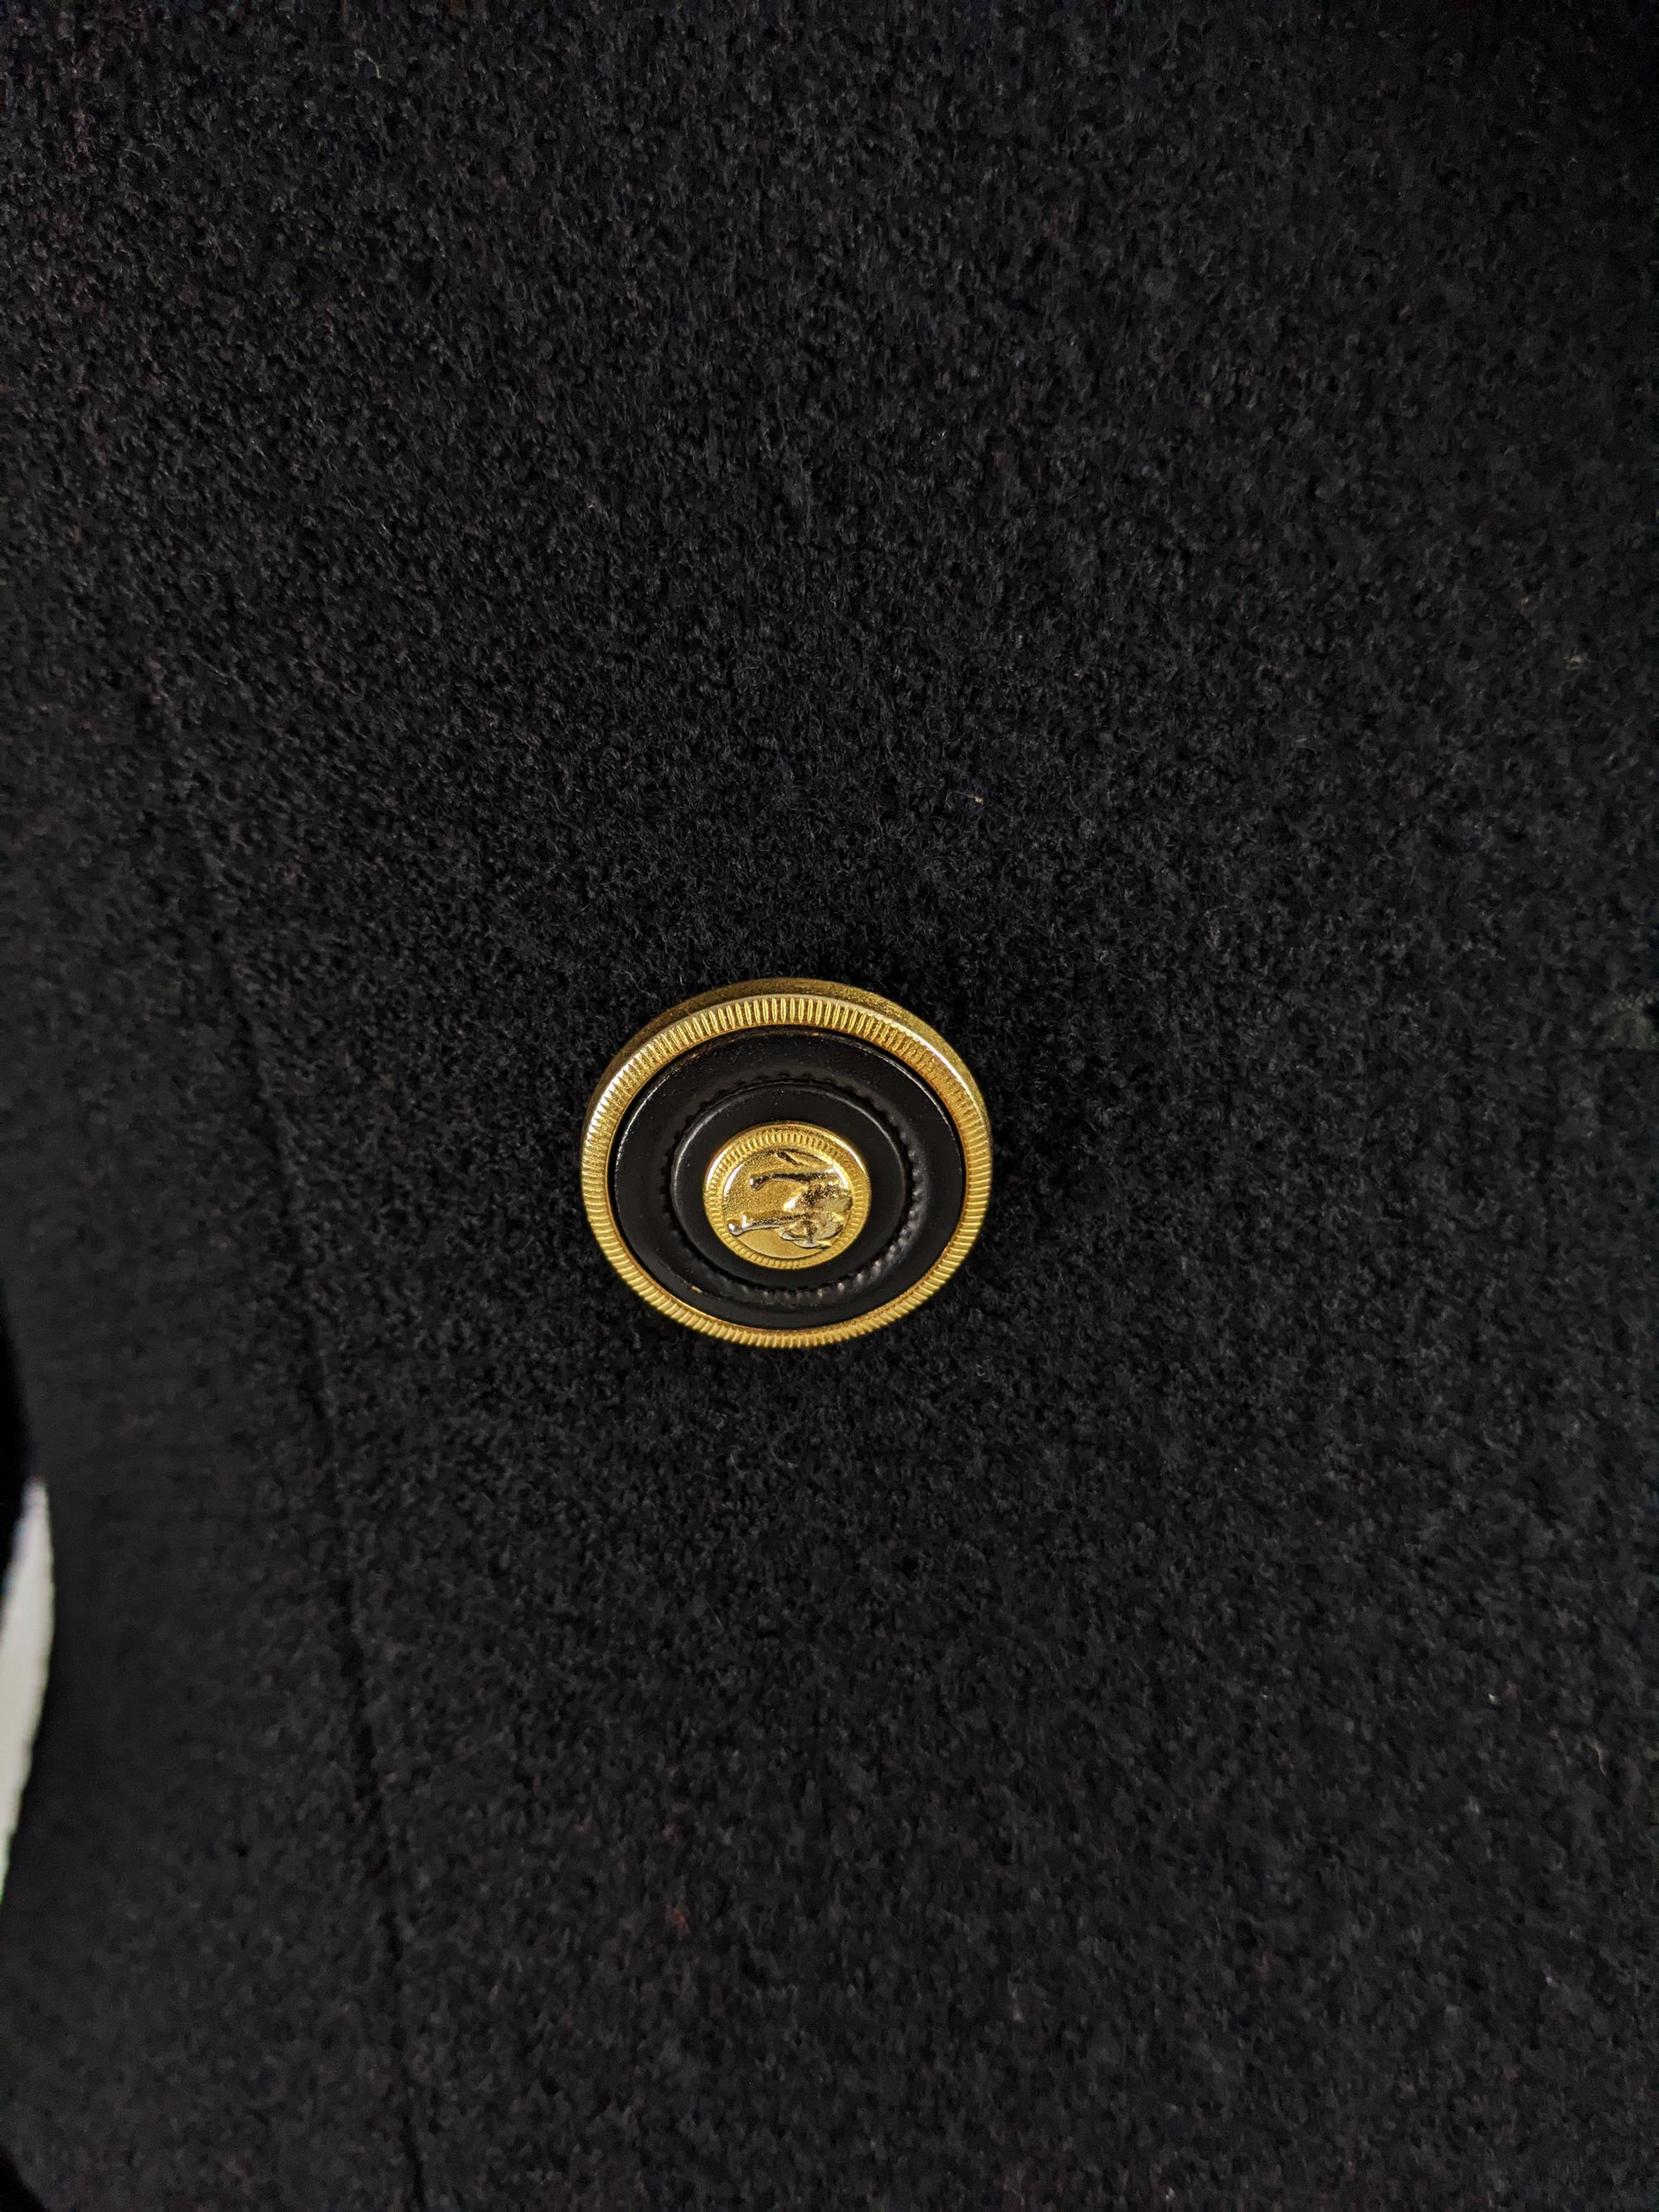 Women's Gianni Versace Versus Vintage Black Wool Tweed Jacket